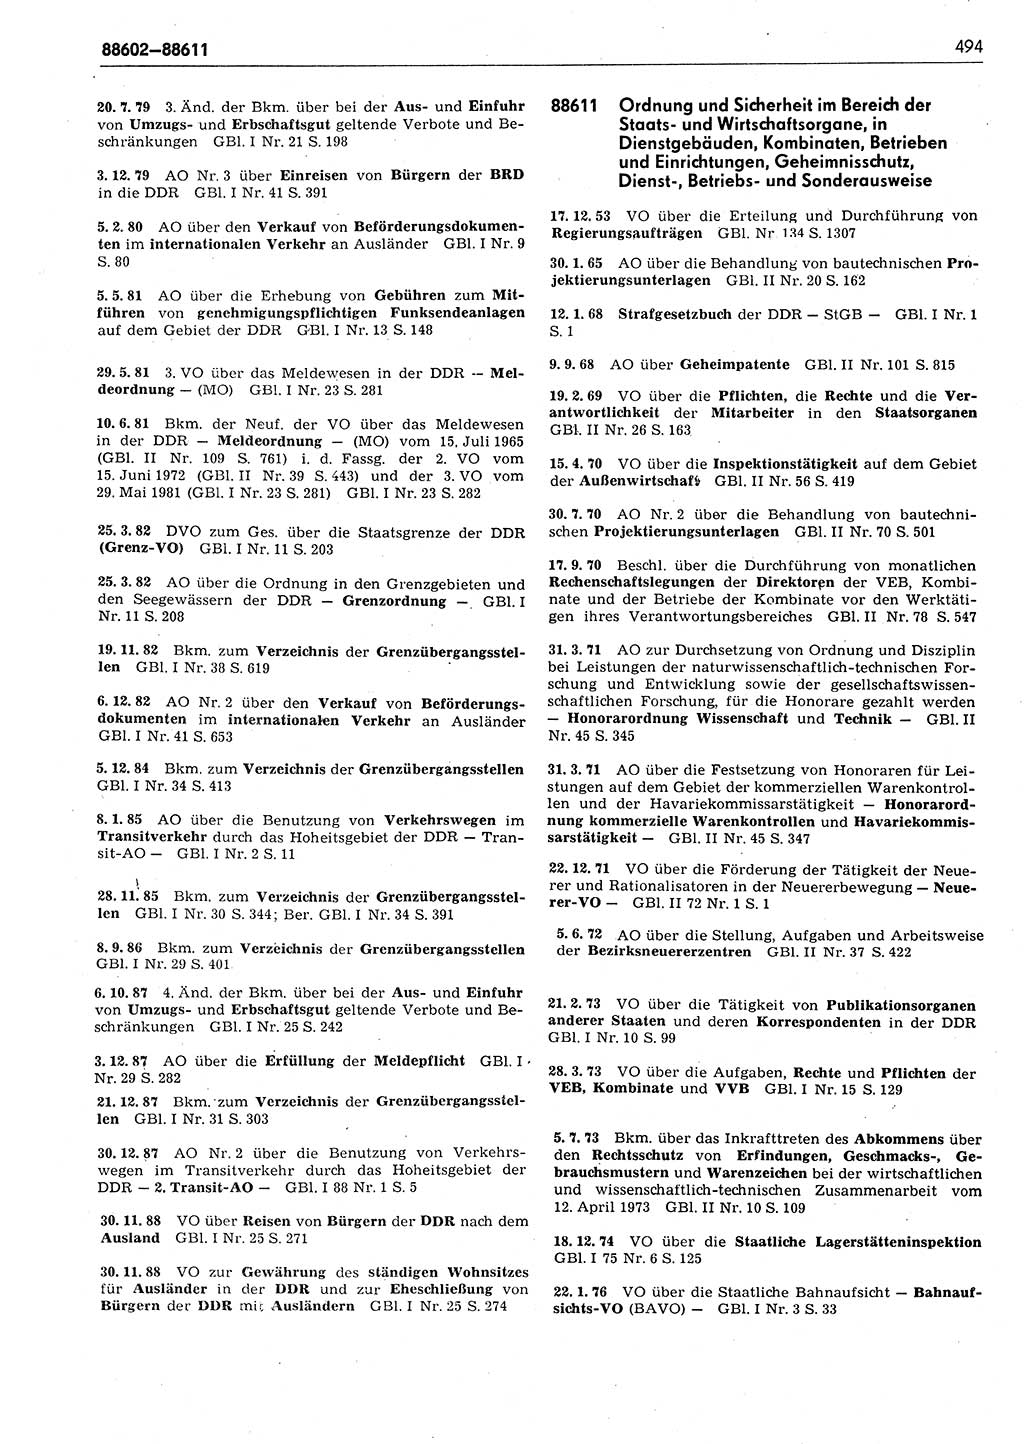 Das geltende Recht der Deutschen Demokratischen Republik (DDR) 1949-1988, Seite 494 (Gelt. R. DDR 1949-1988, S. 494)